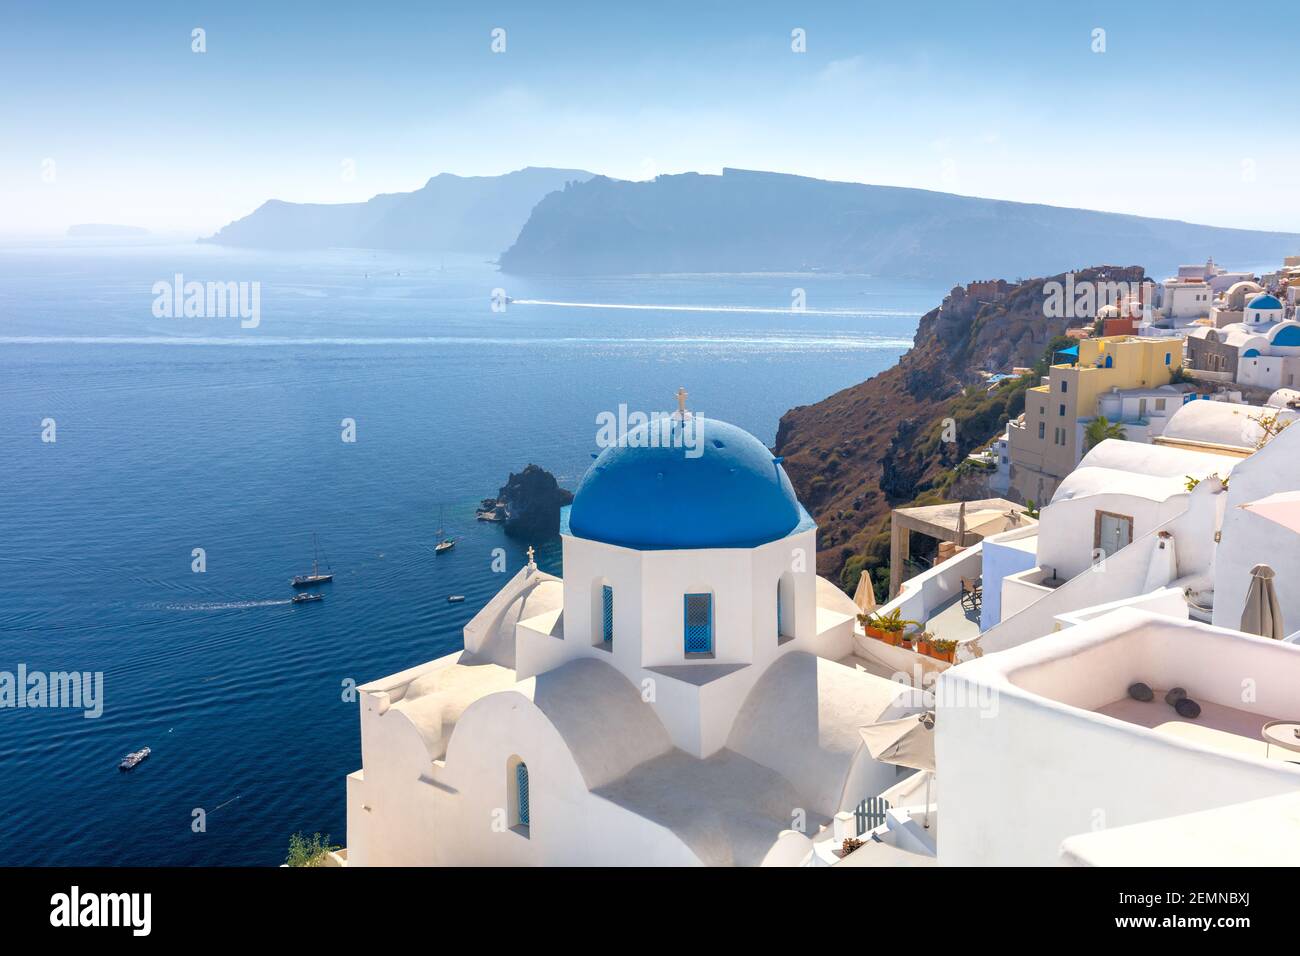 Famosa vista della città di Oia sull'isola di Santorini in Grecia. Tradizionale cupola blu e case bianche. Grecia, mar Egeo. Famosi destinati europei Foto Stock